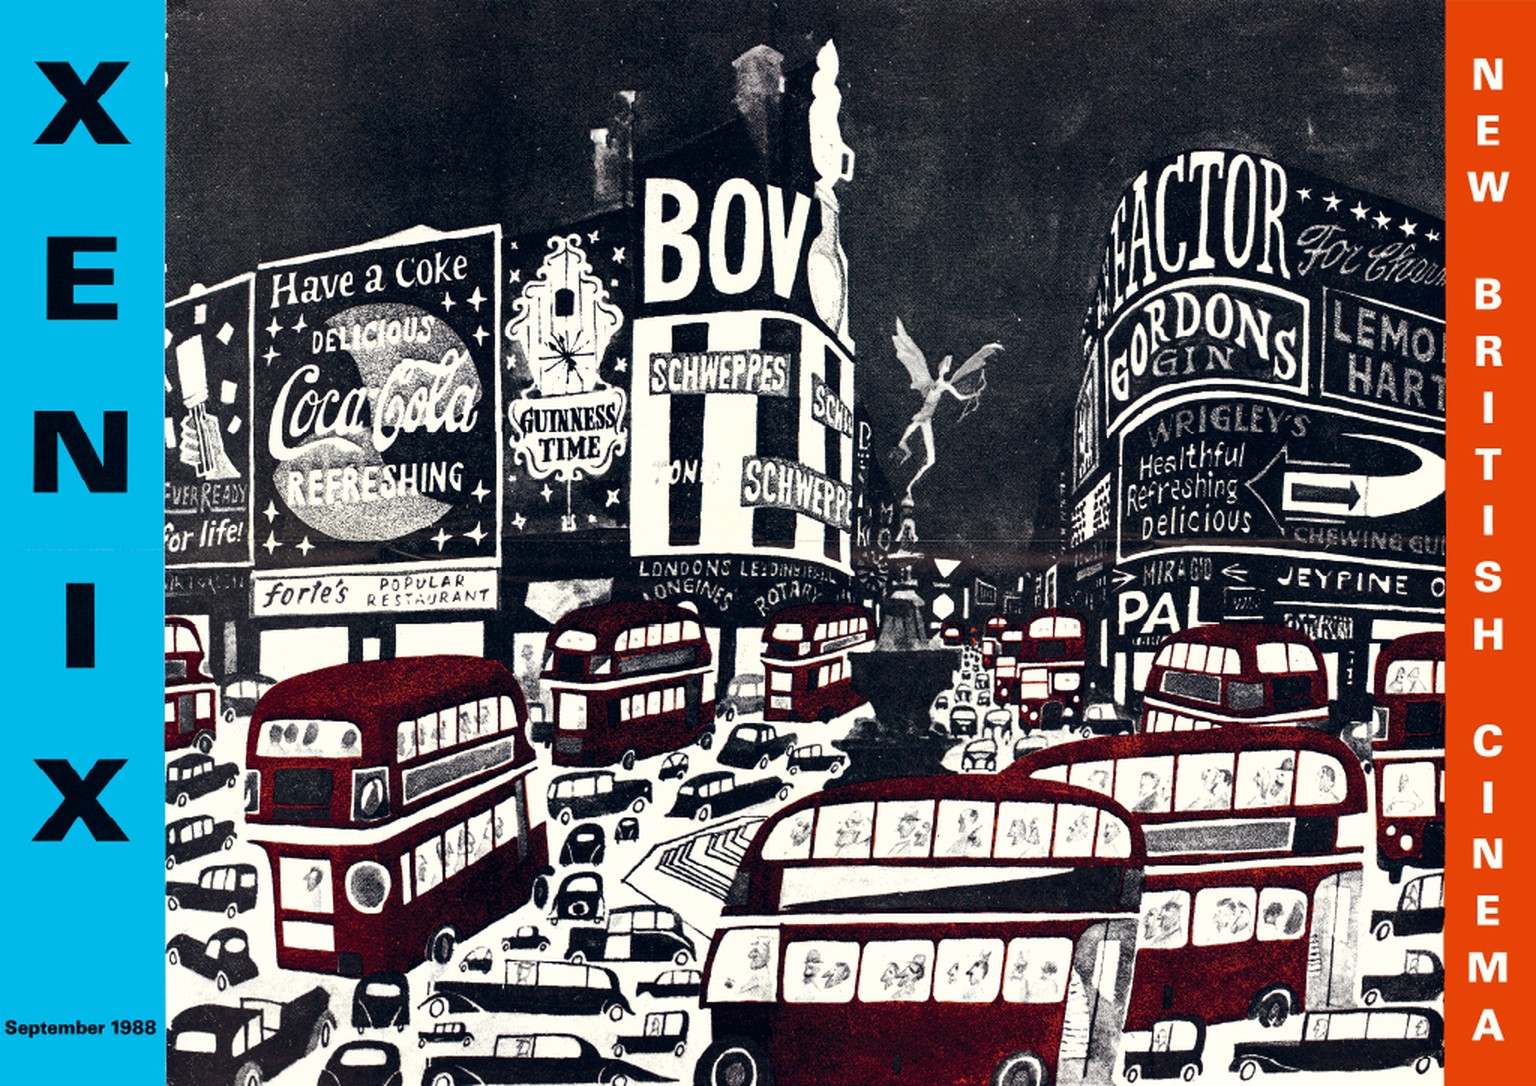 Im September 1988 wurde der Picadilly Circus in London als pittoreske Retro-Szenerie gezeichnet. Die Figuren wirken wie von Sempé.